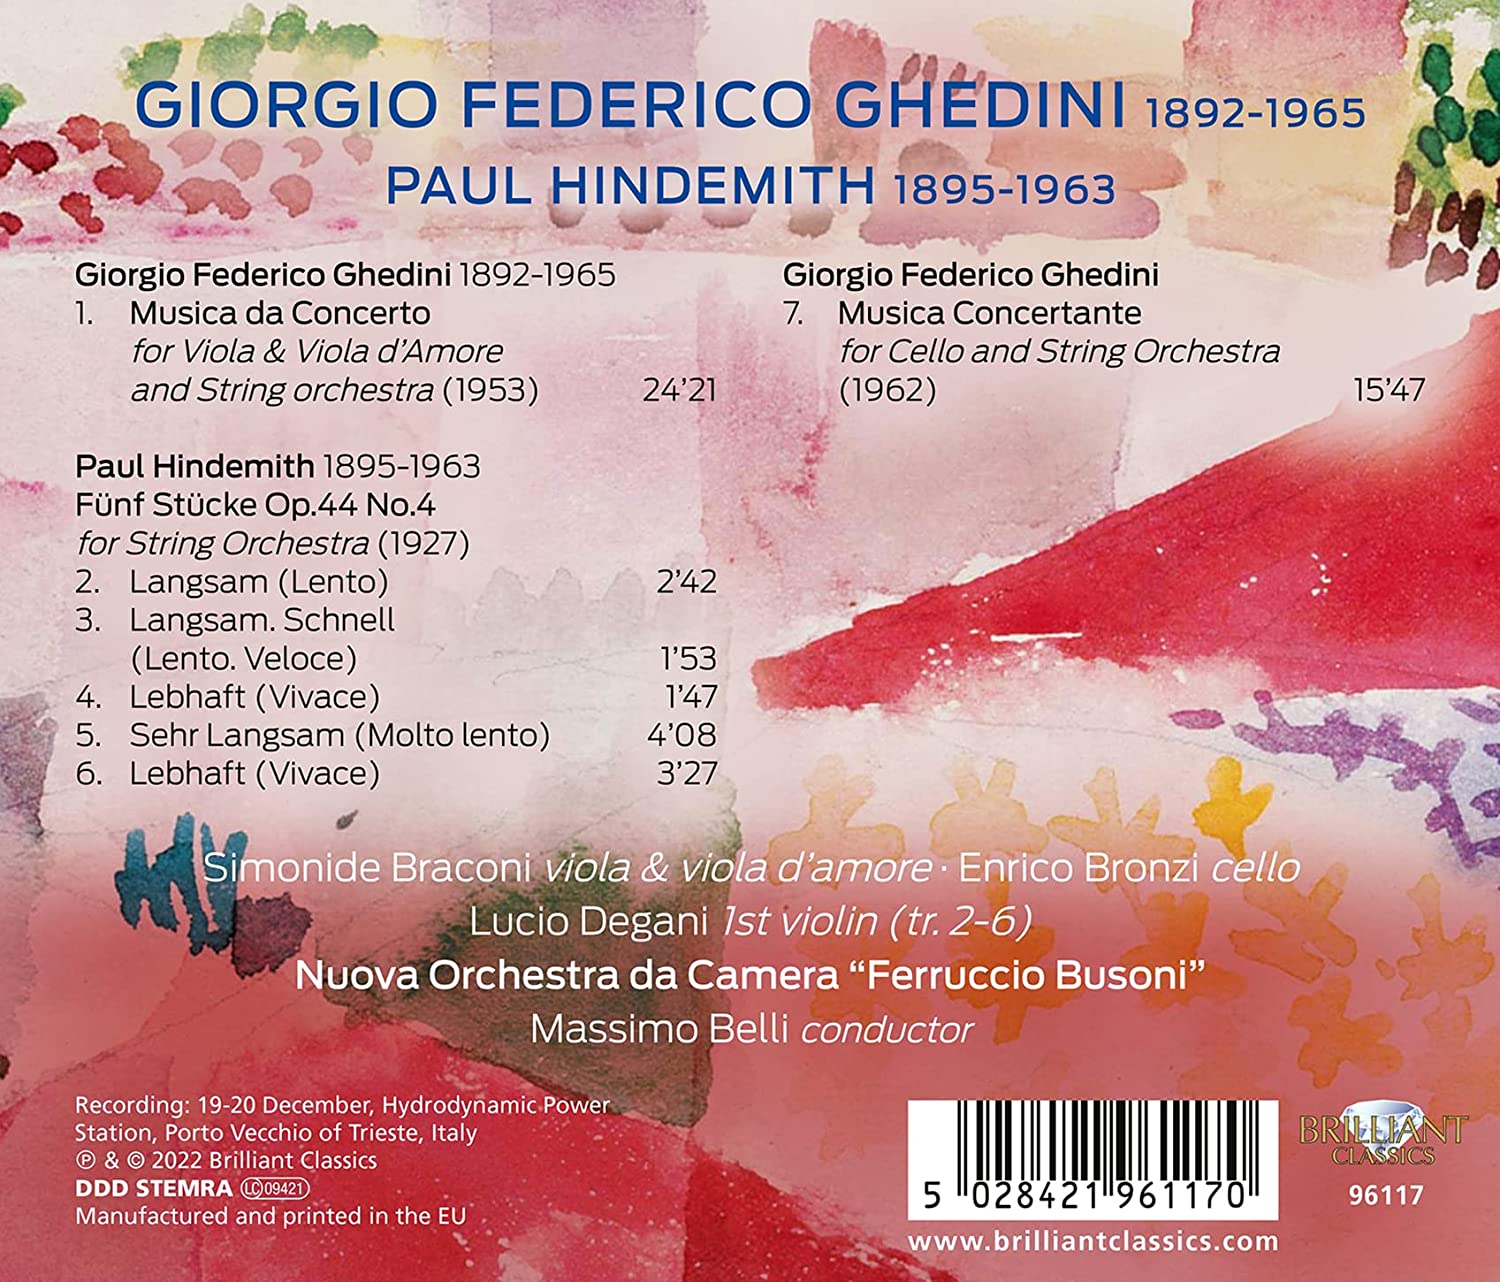 조르지오 페데리코 게디니: 현악 오케스트라 협주곡, 합주곡 / 힌데미트: 현악 오케스트라를 위한 소품 (Ghedini: Musica da Concerto, Concertante / Hindemith: Funf Stucke Op.44 No.4)